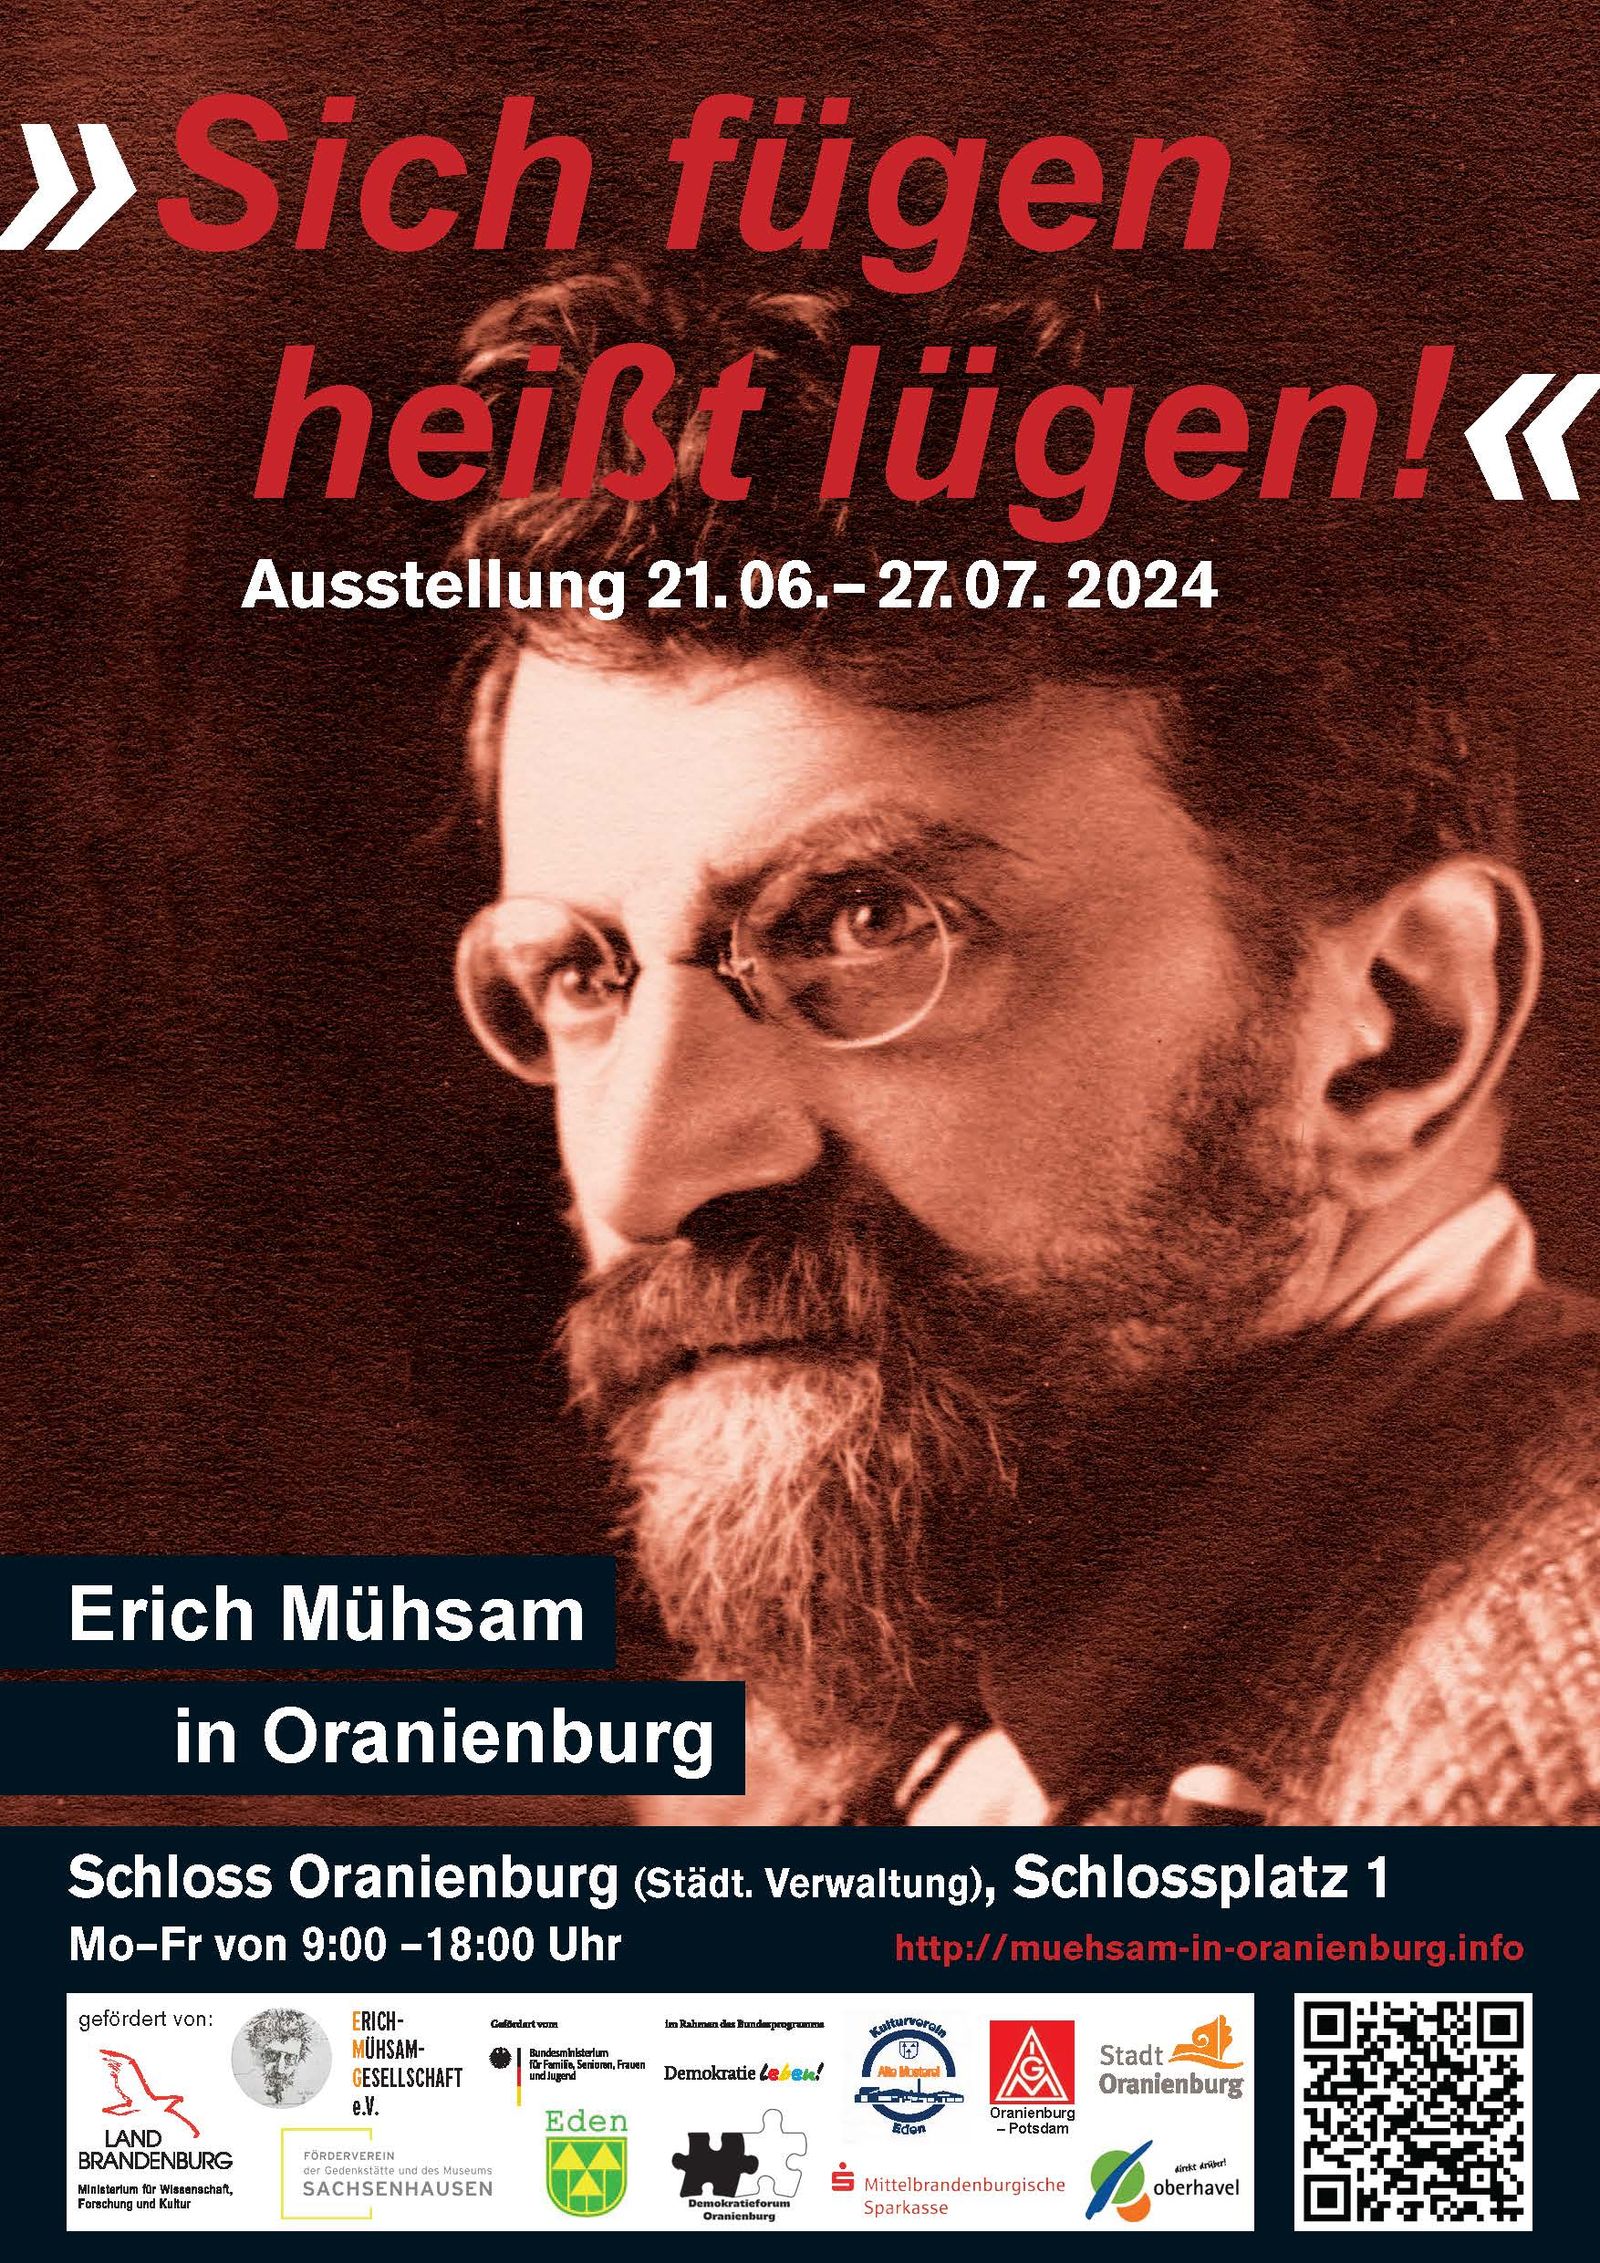 19.7. Gemeinsamer Besuch der Erich Mühsam Ausstellung in Oranienburg